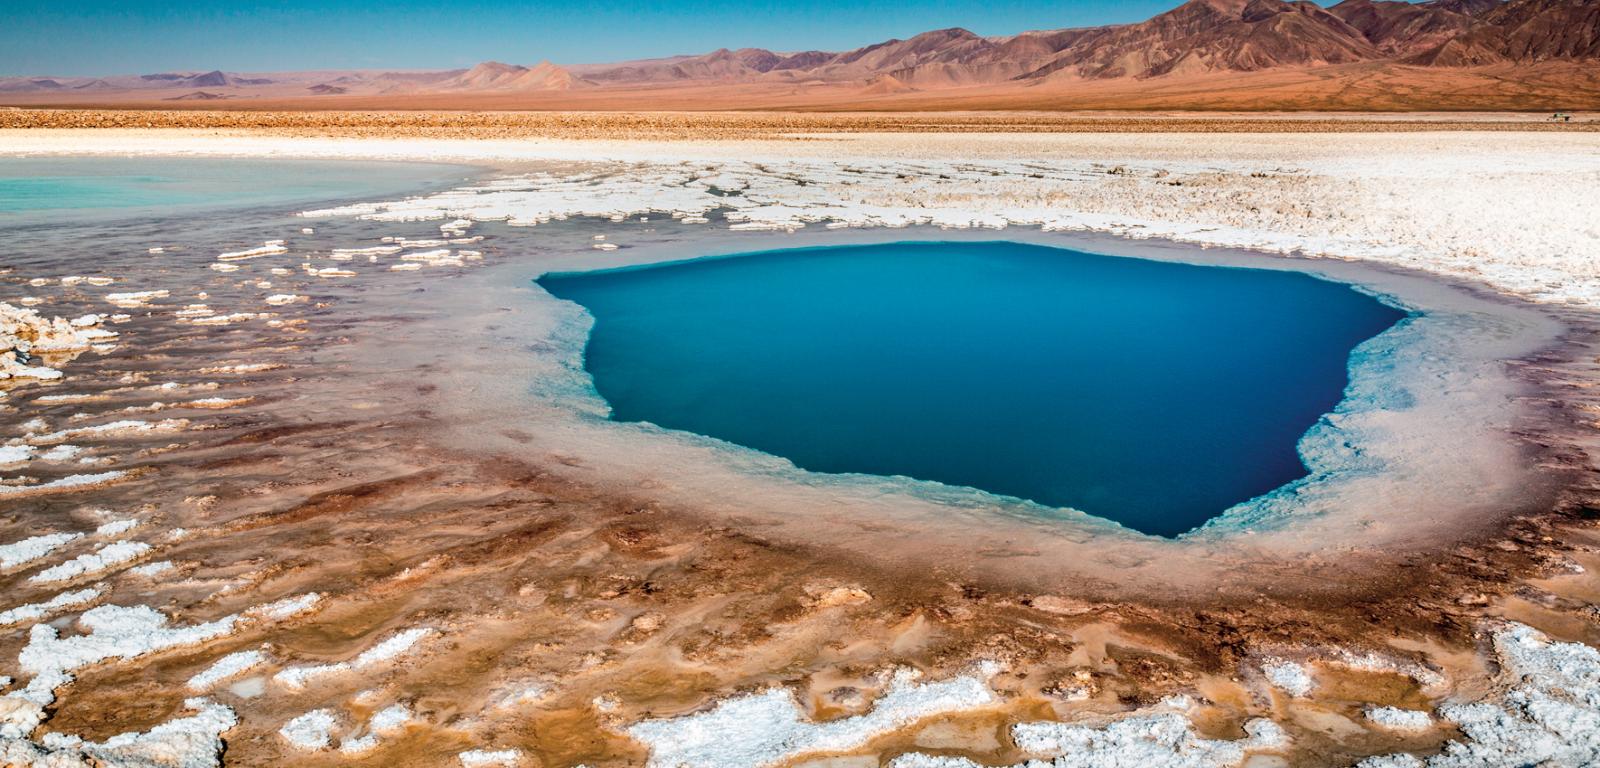 Salar de Atacama wchodzi w skład tzw. litowego trójkąta na pograniczu północnego Chile, Argentyny i Boliwii.